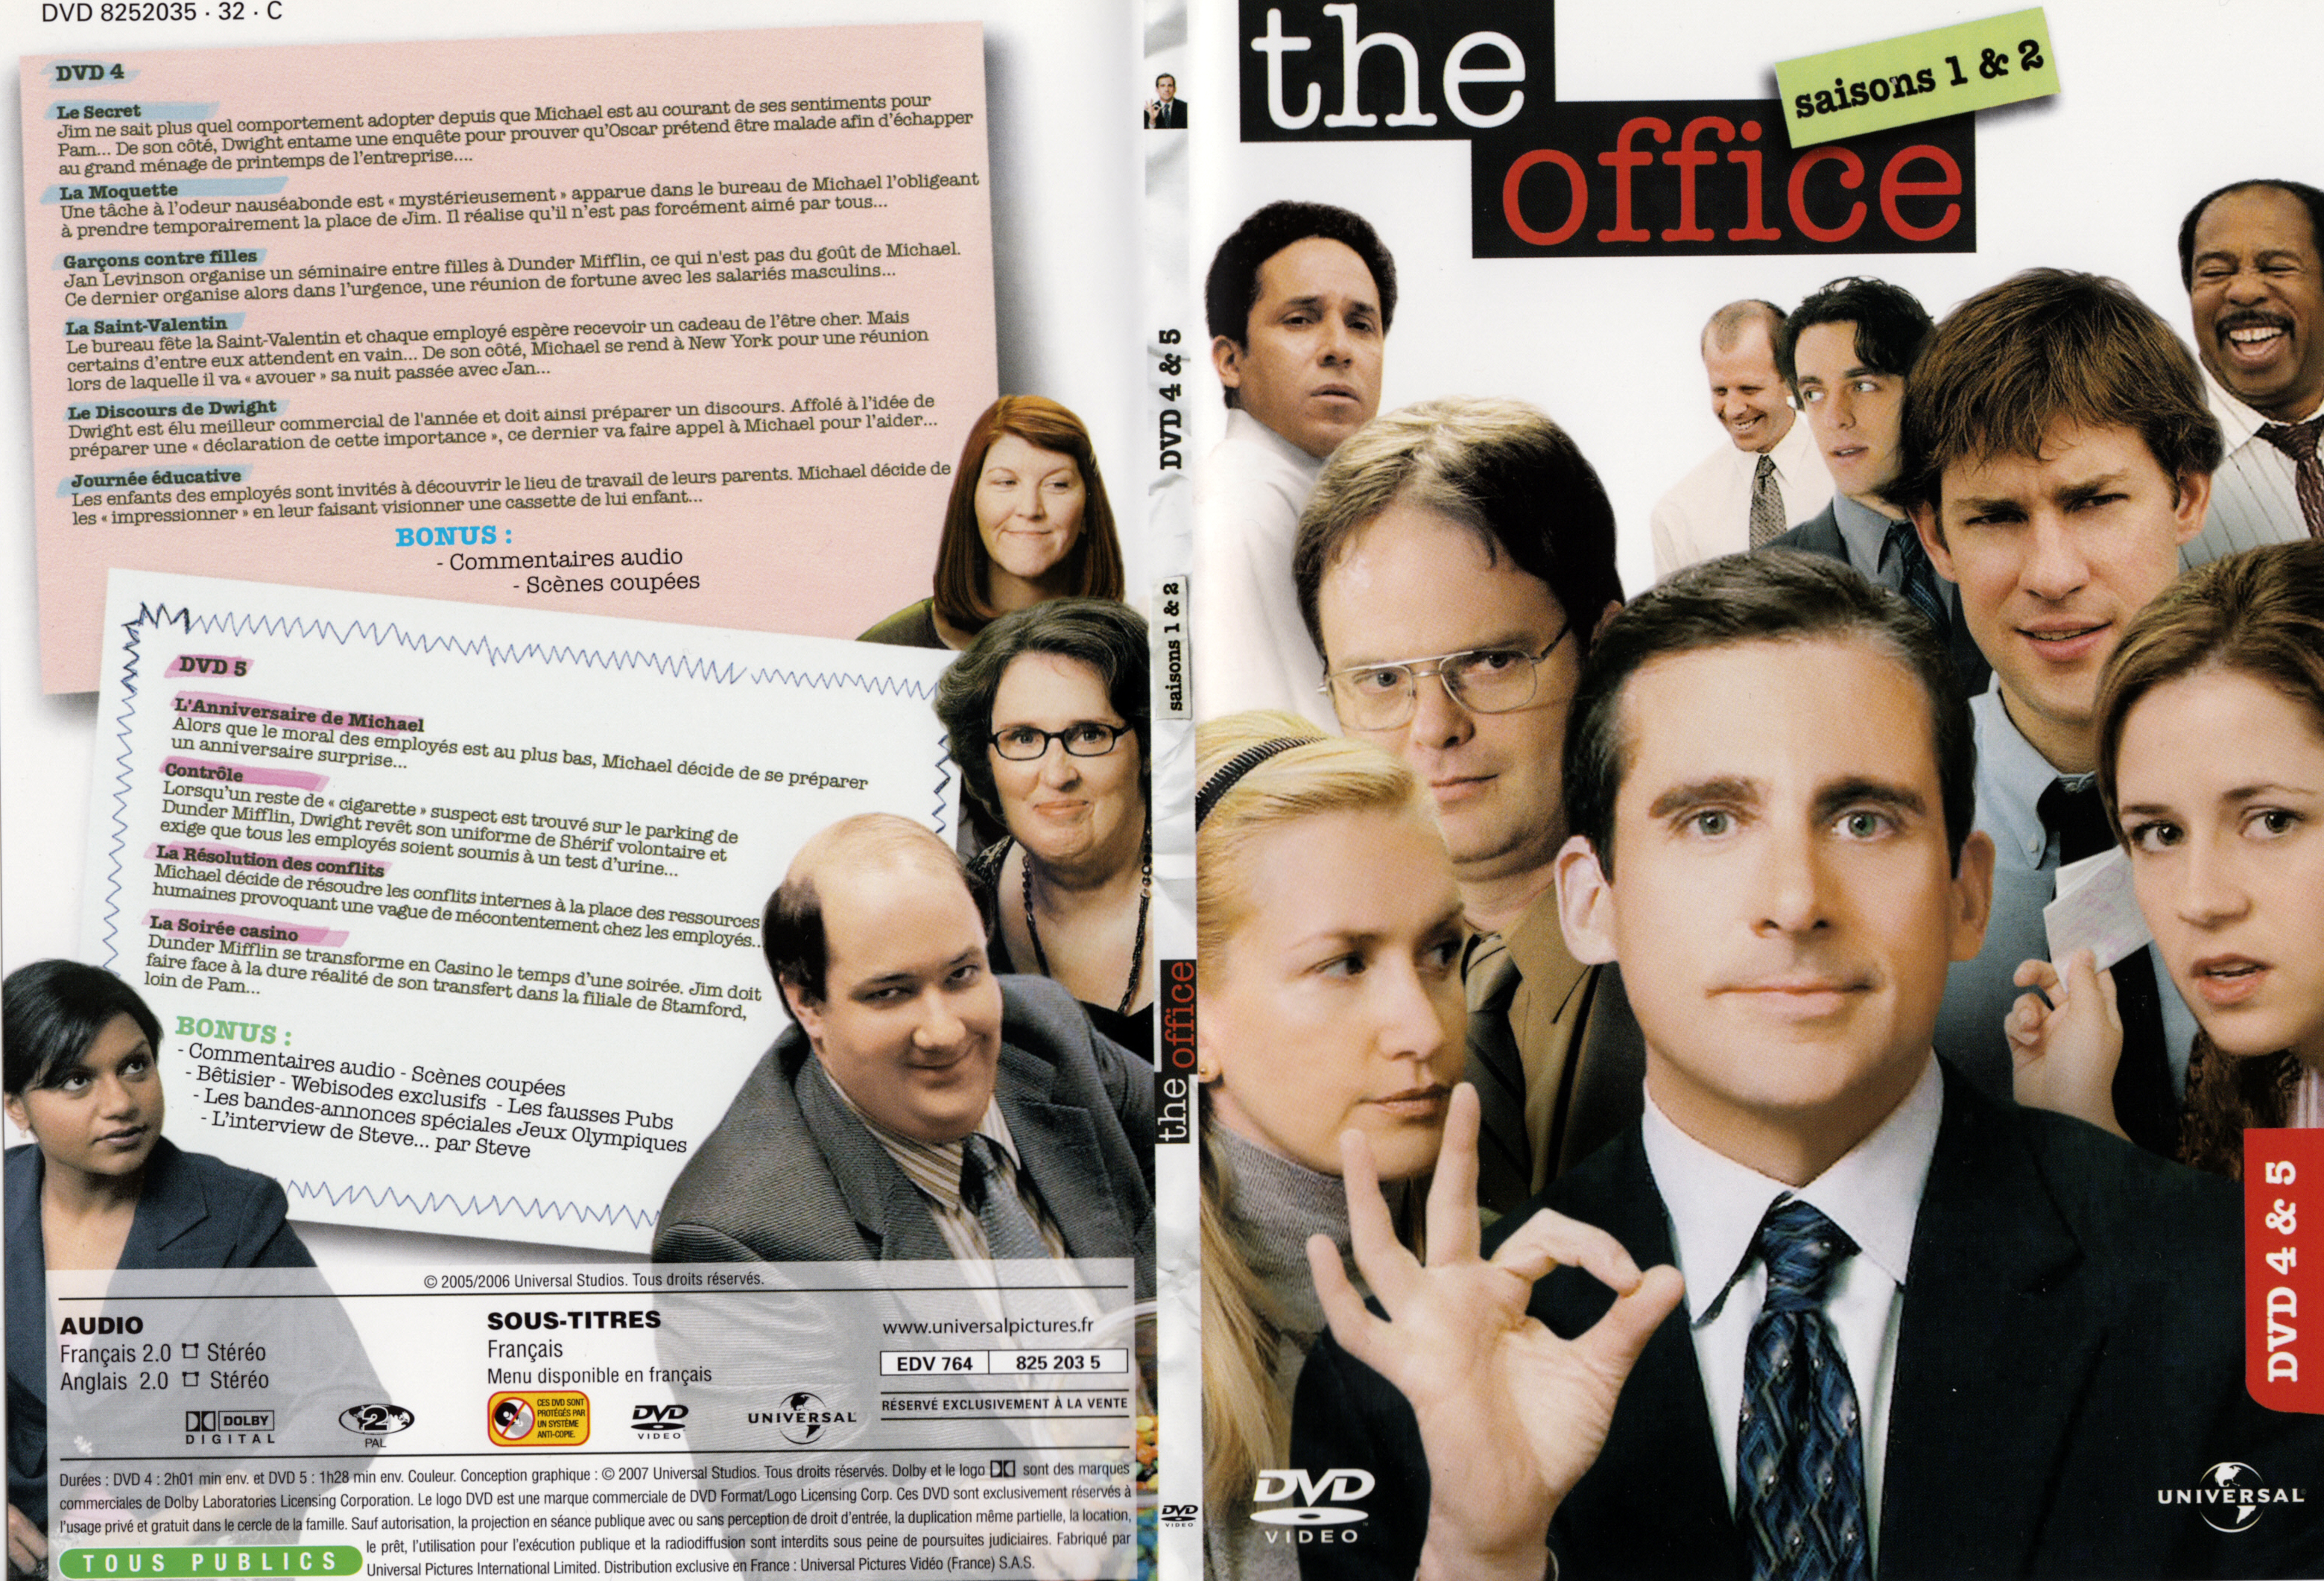 Jaquette DVD The office Saison 1 et 2 DVD 3